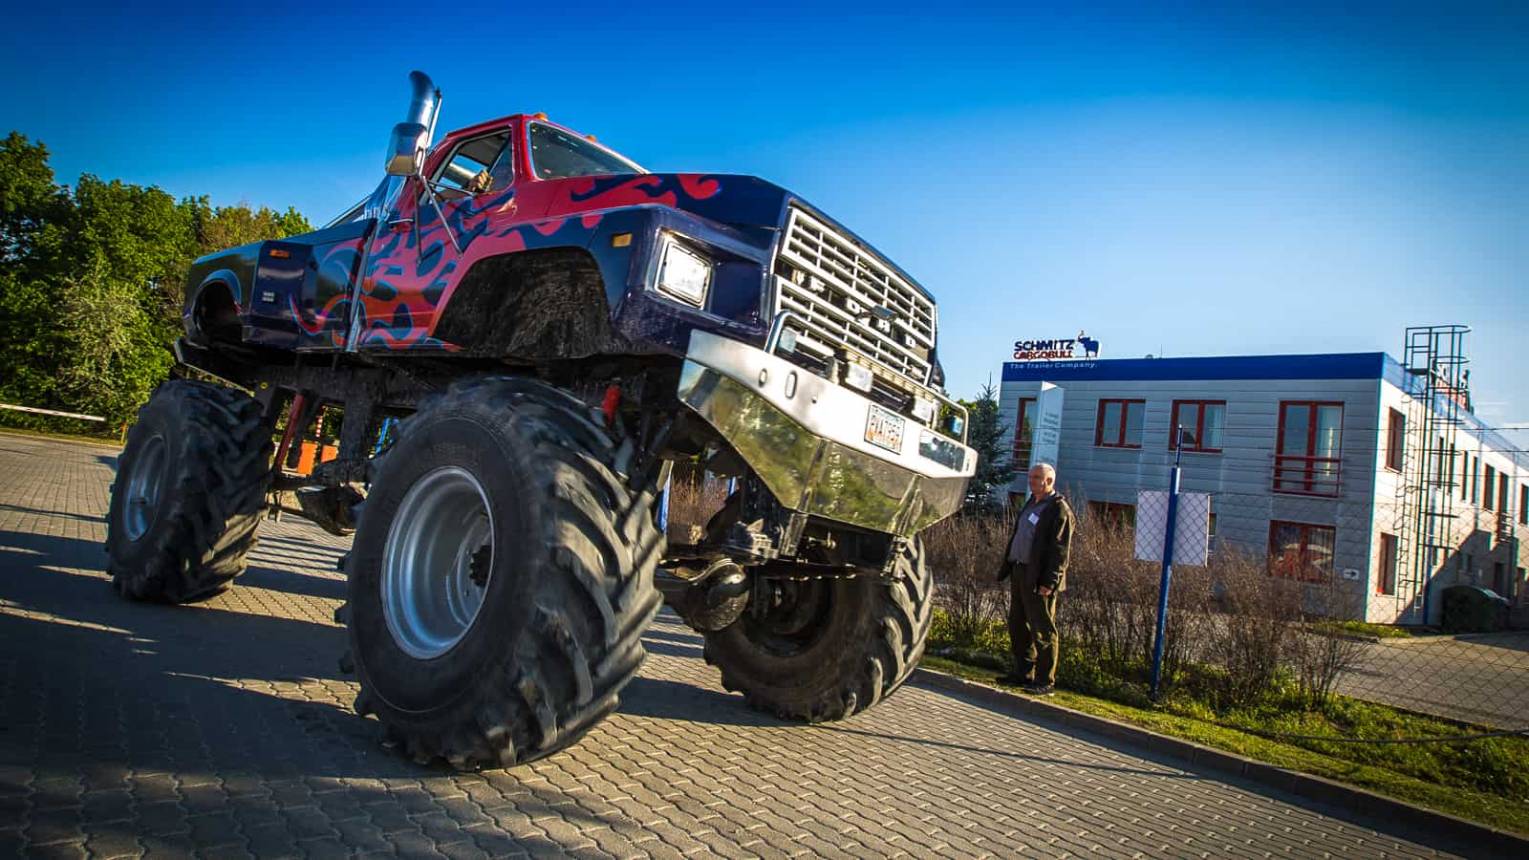 Óriás Monster Truck - Bigfoot vezetés 20 fő részére 5